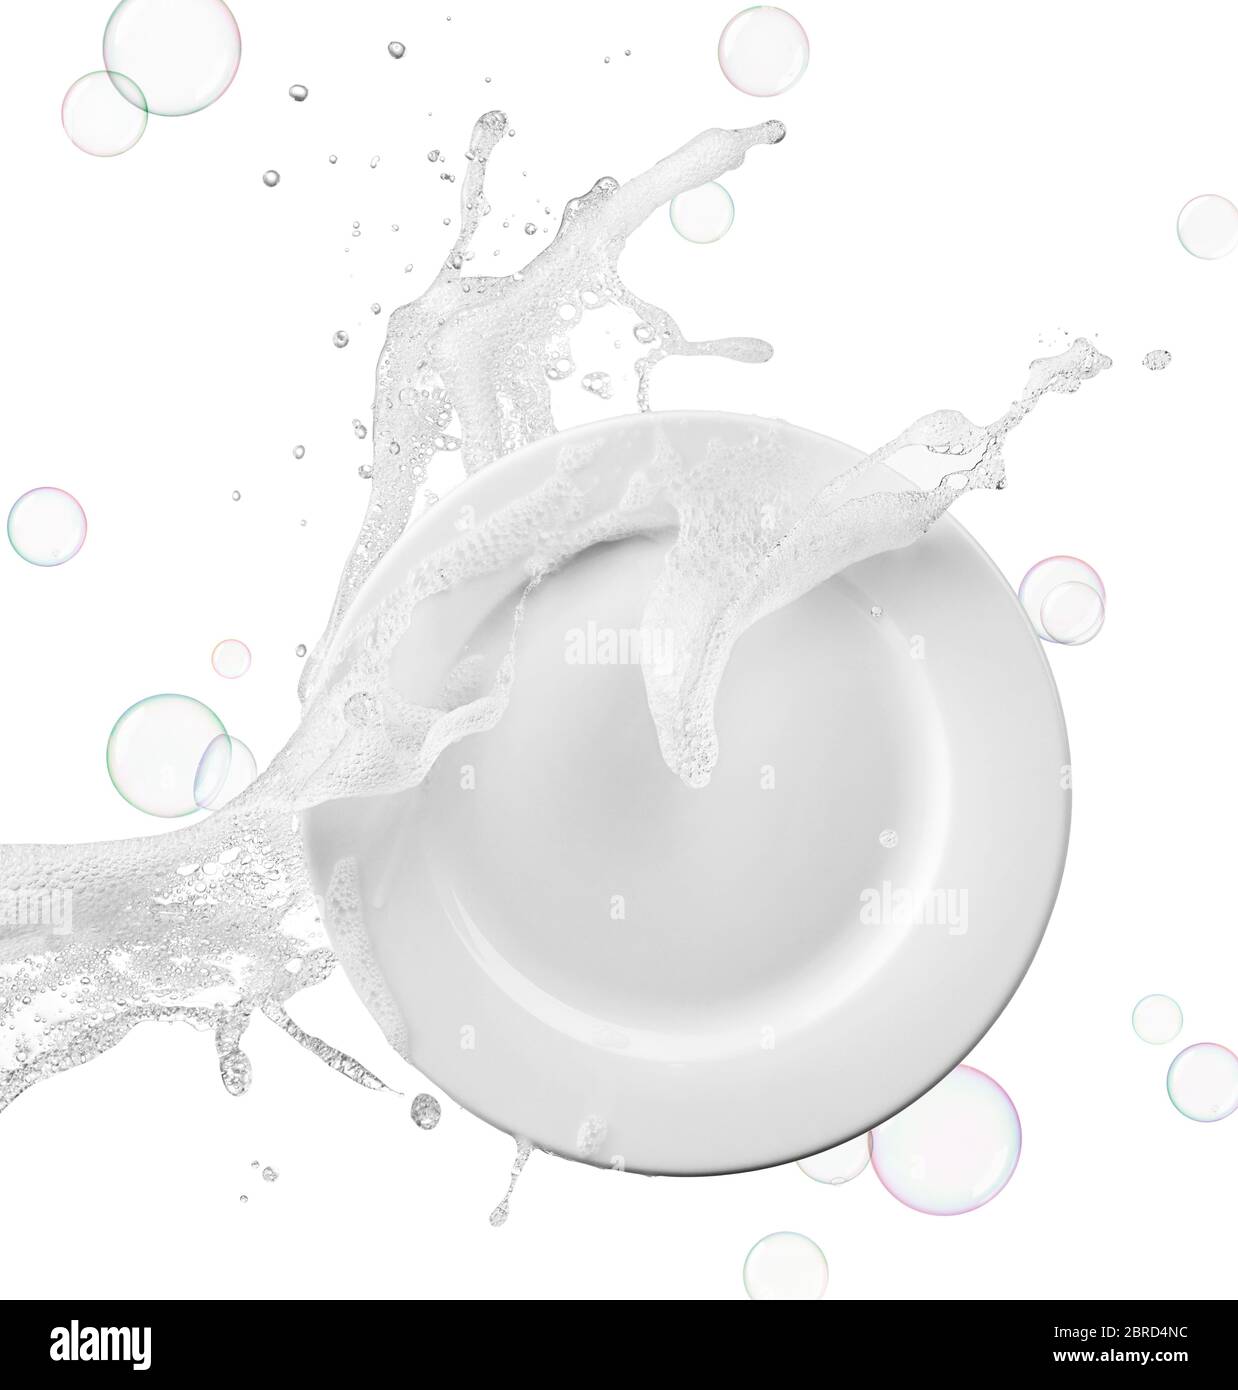 eau contenant du savon et des bulles sur l'assiette Banque D'Images